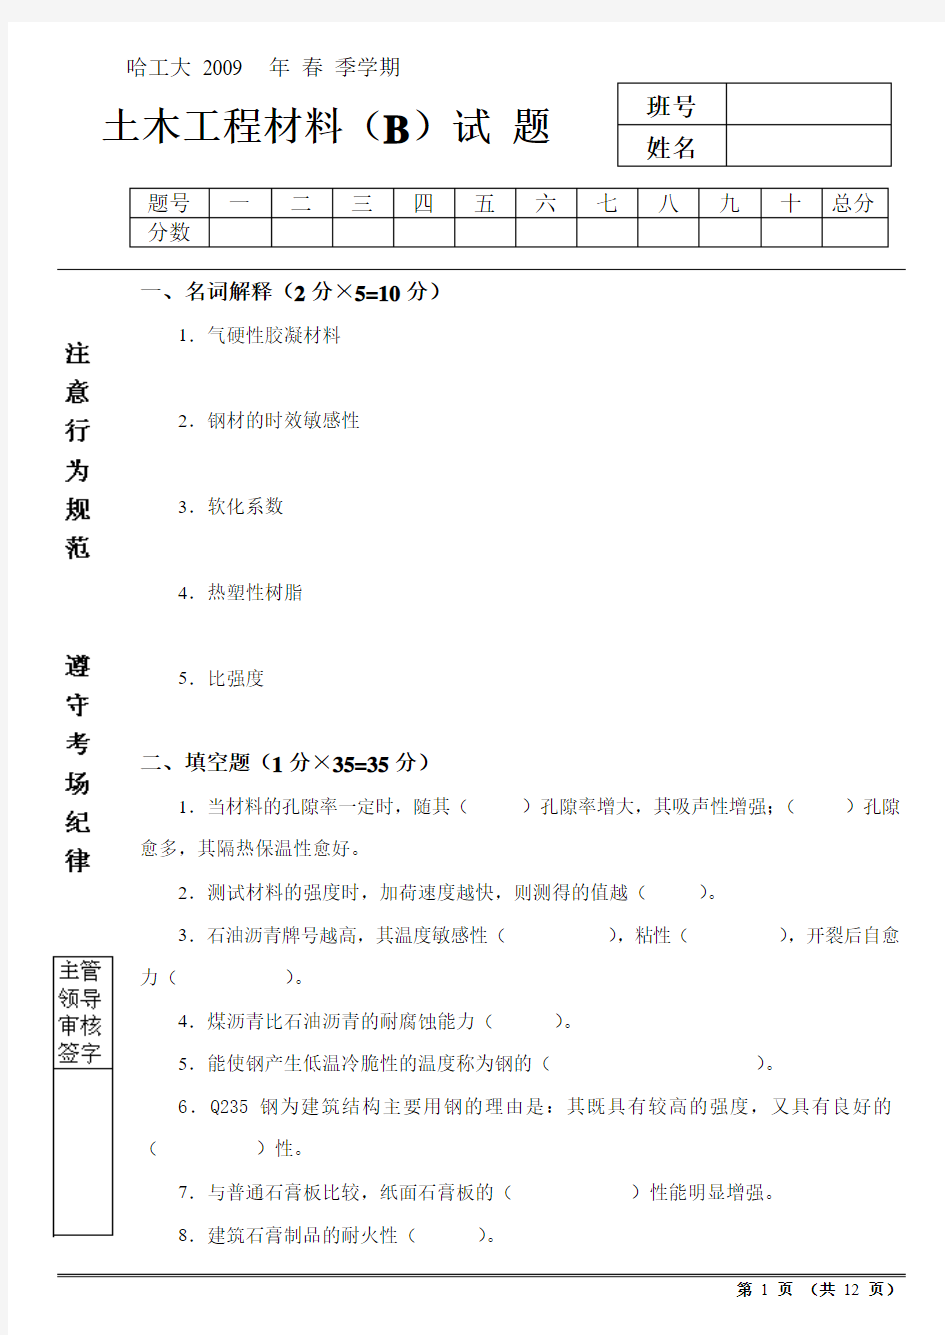 哈尔滨工业大学2009年春季学期土木工程材料期末考试试题(B)及答案